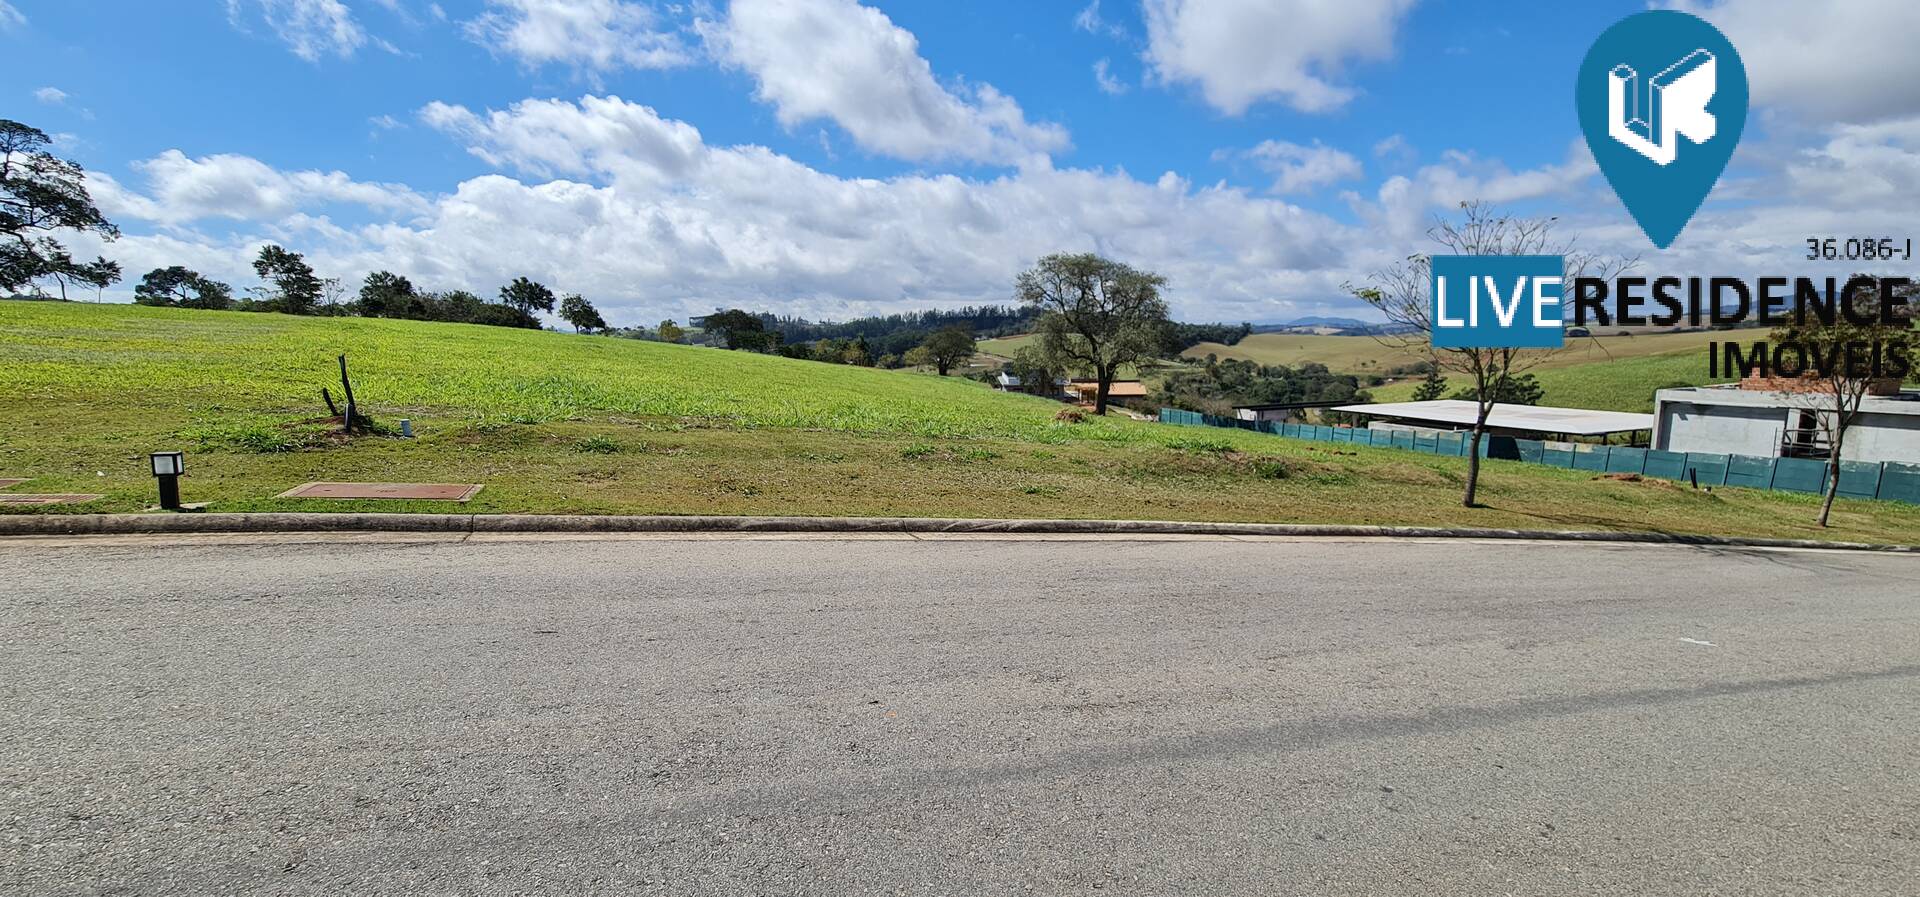 Fazenda Dona Carolina, terreno plano a venda, Itatiba SP alto padrão